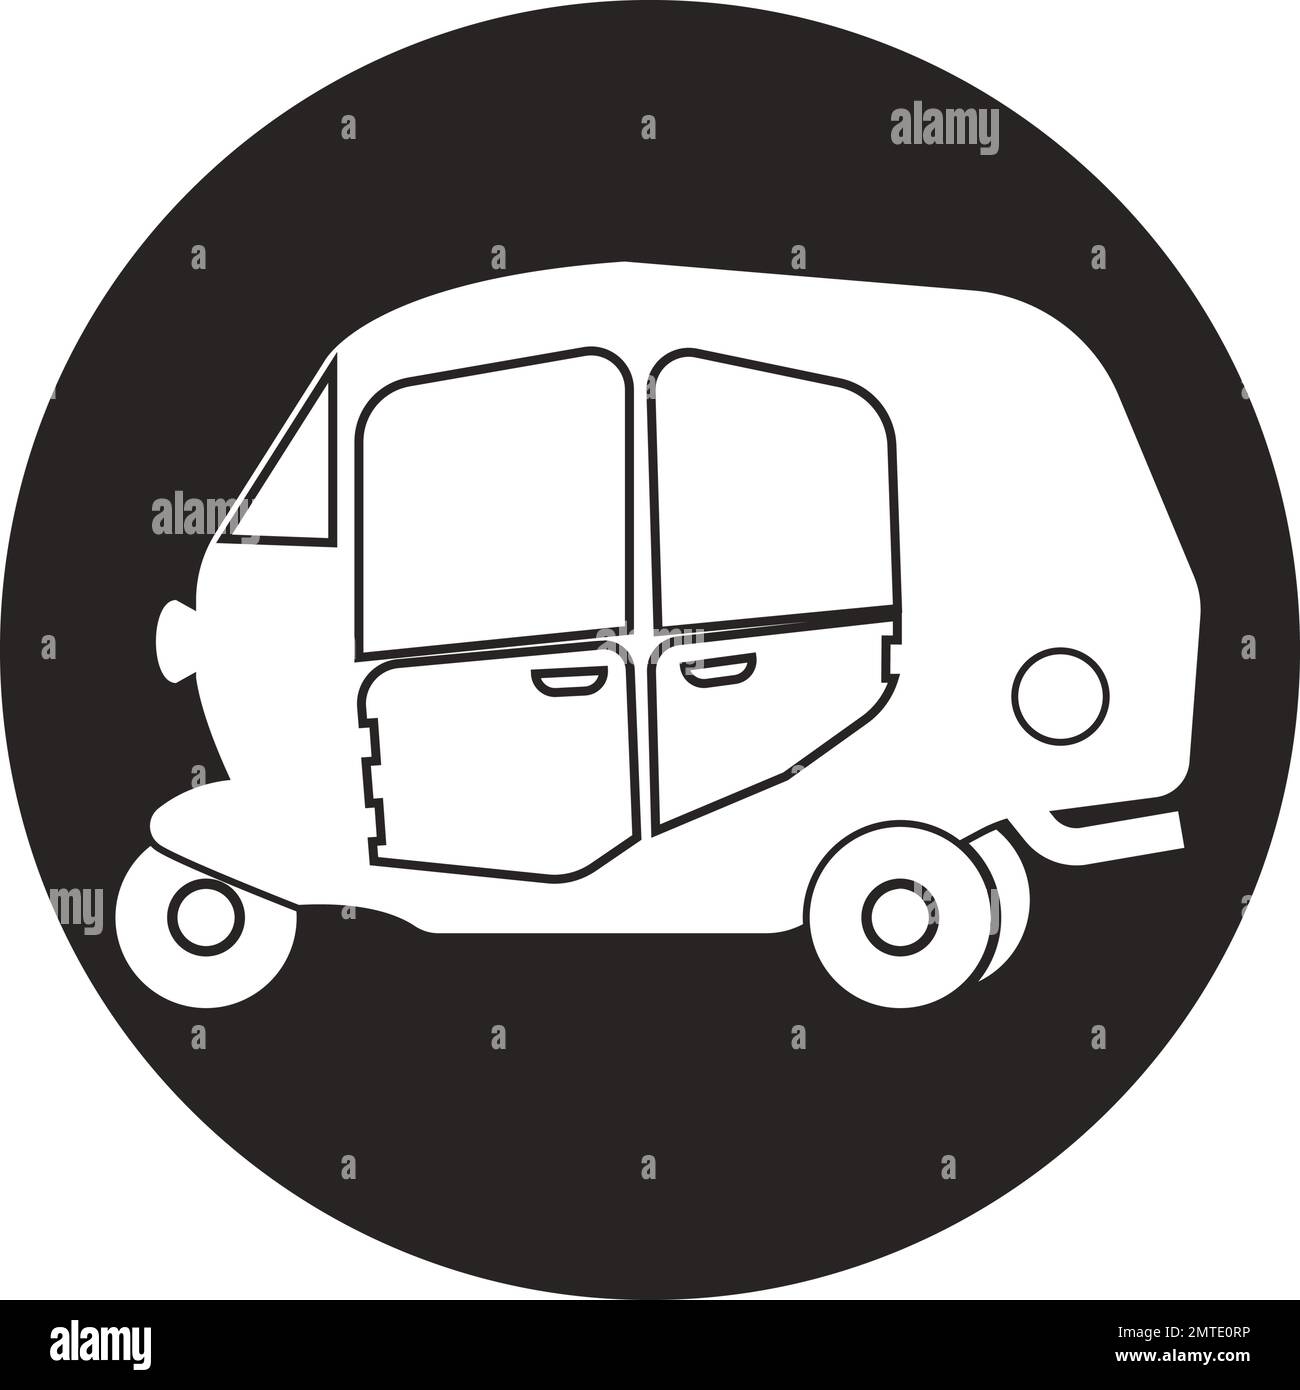 L'icône d'un pousse-pousse motorisé ou d'un transport en commun populaire dans la région asiatique Illustration de Vecteur